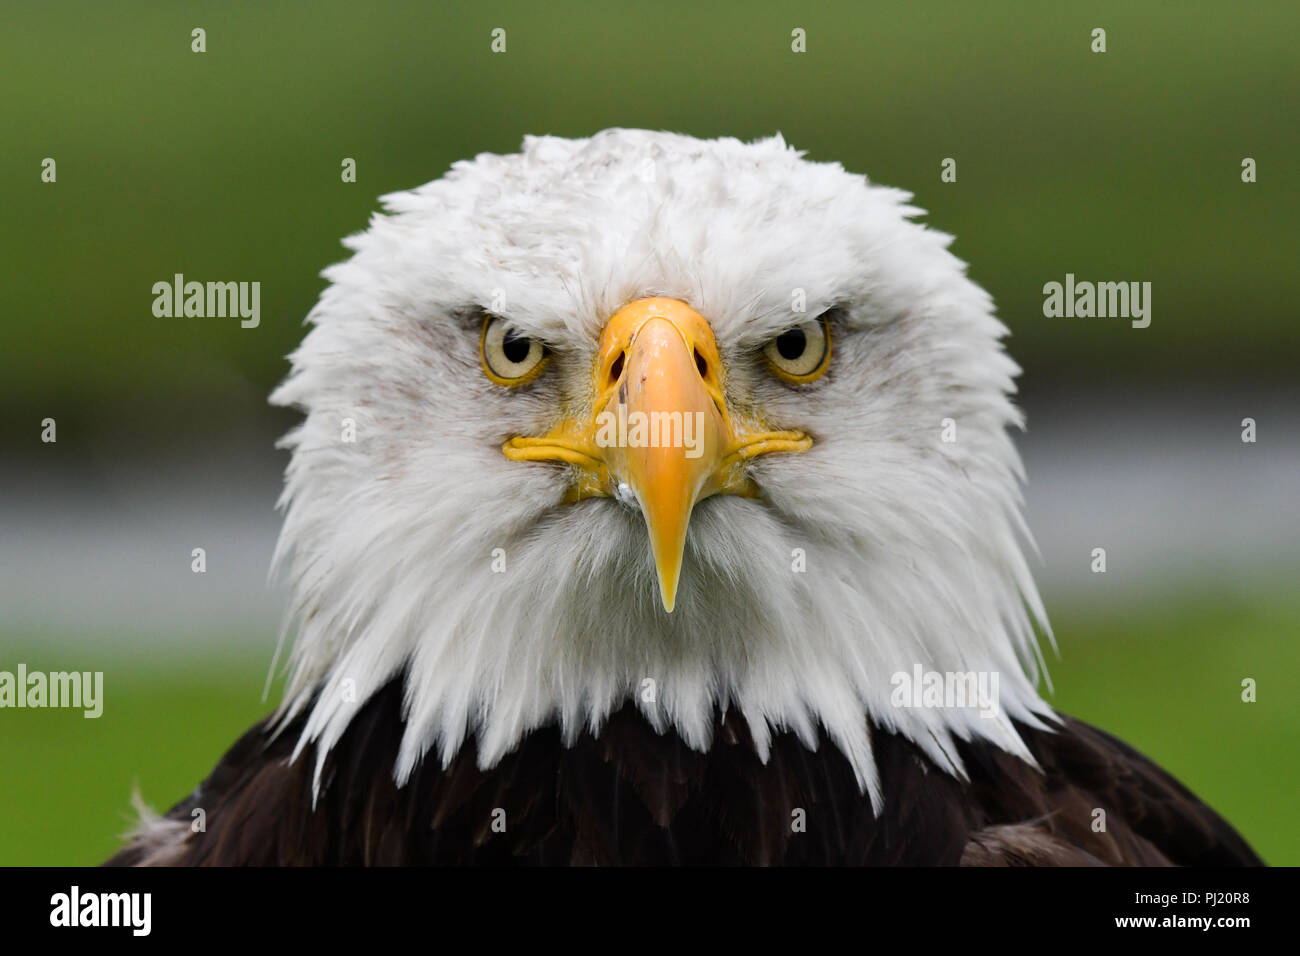 American Eagle portrait Stock Photo